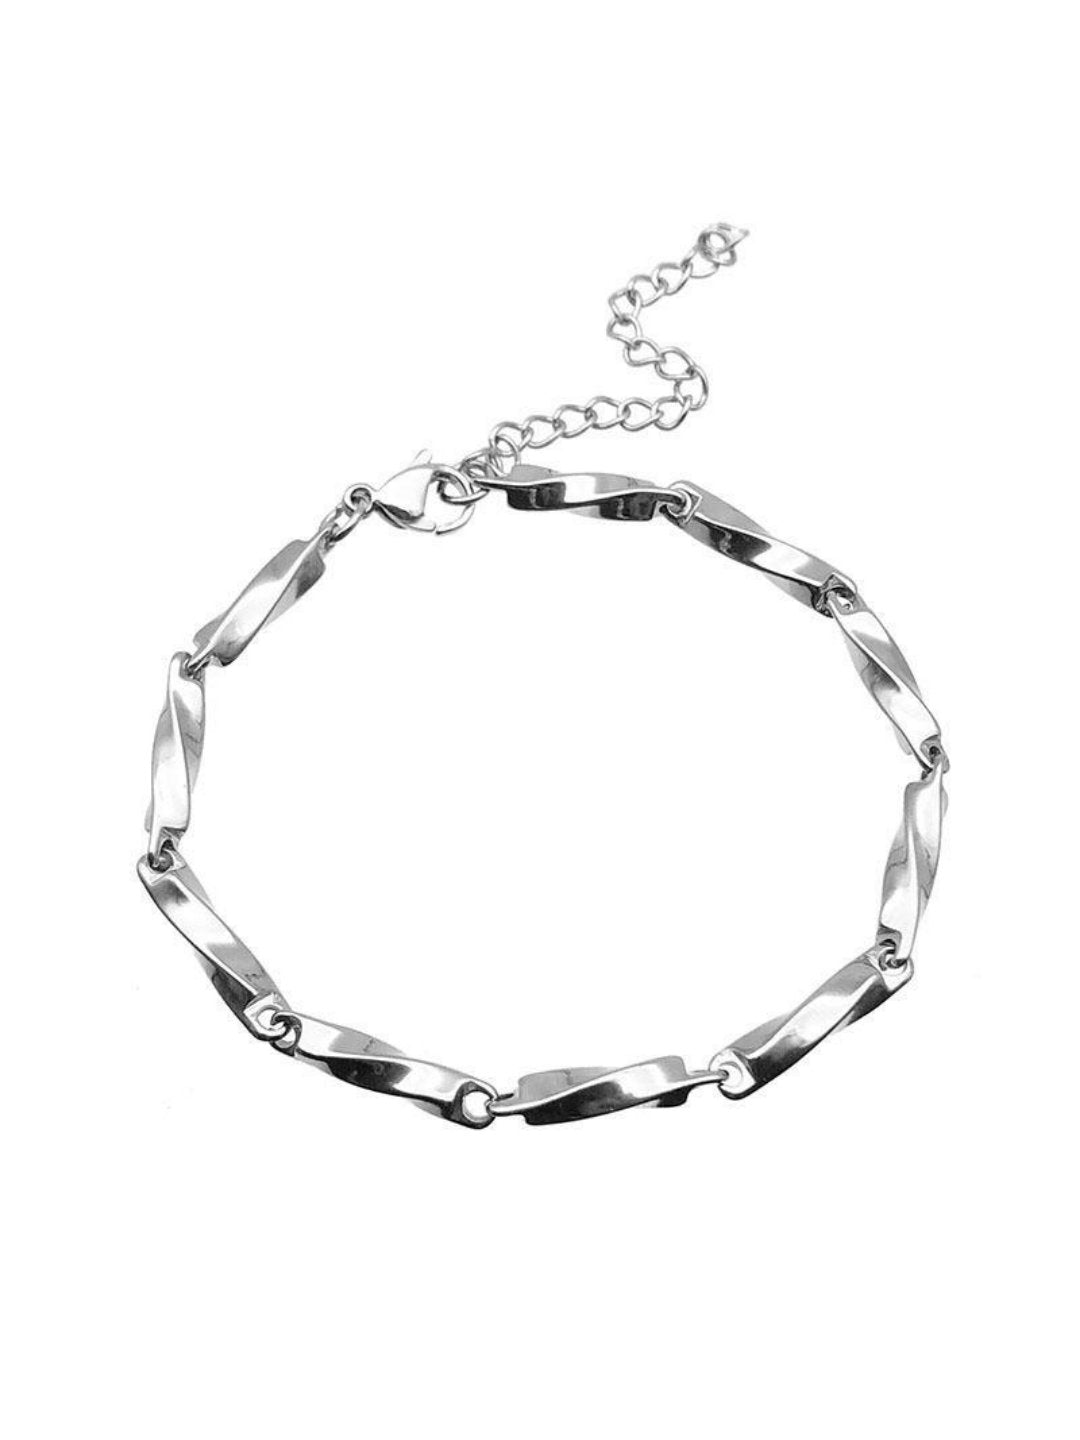 Silver bracelet ax13 - AXES